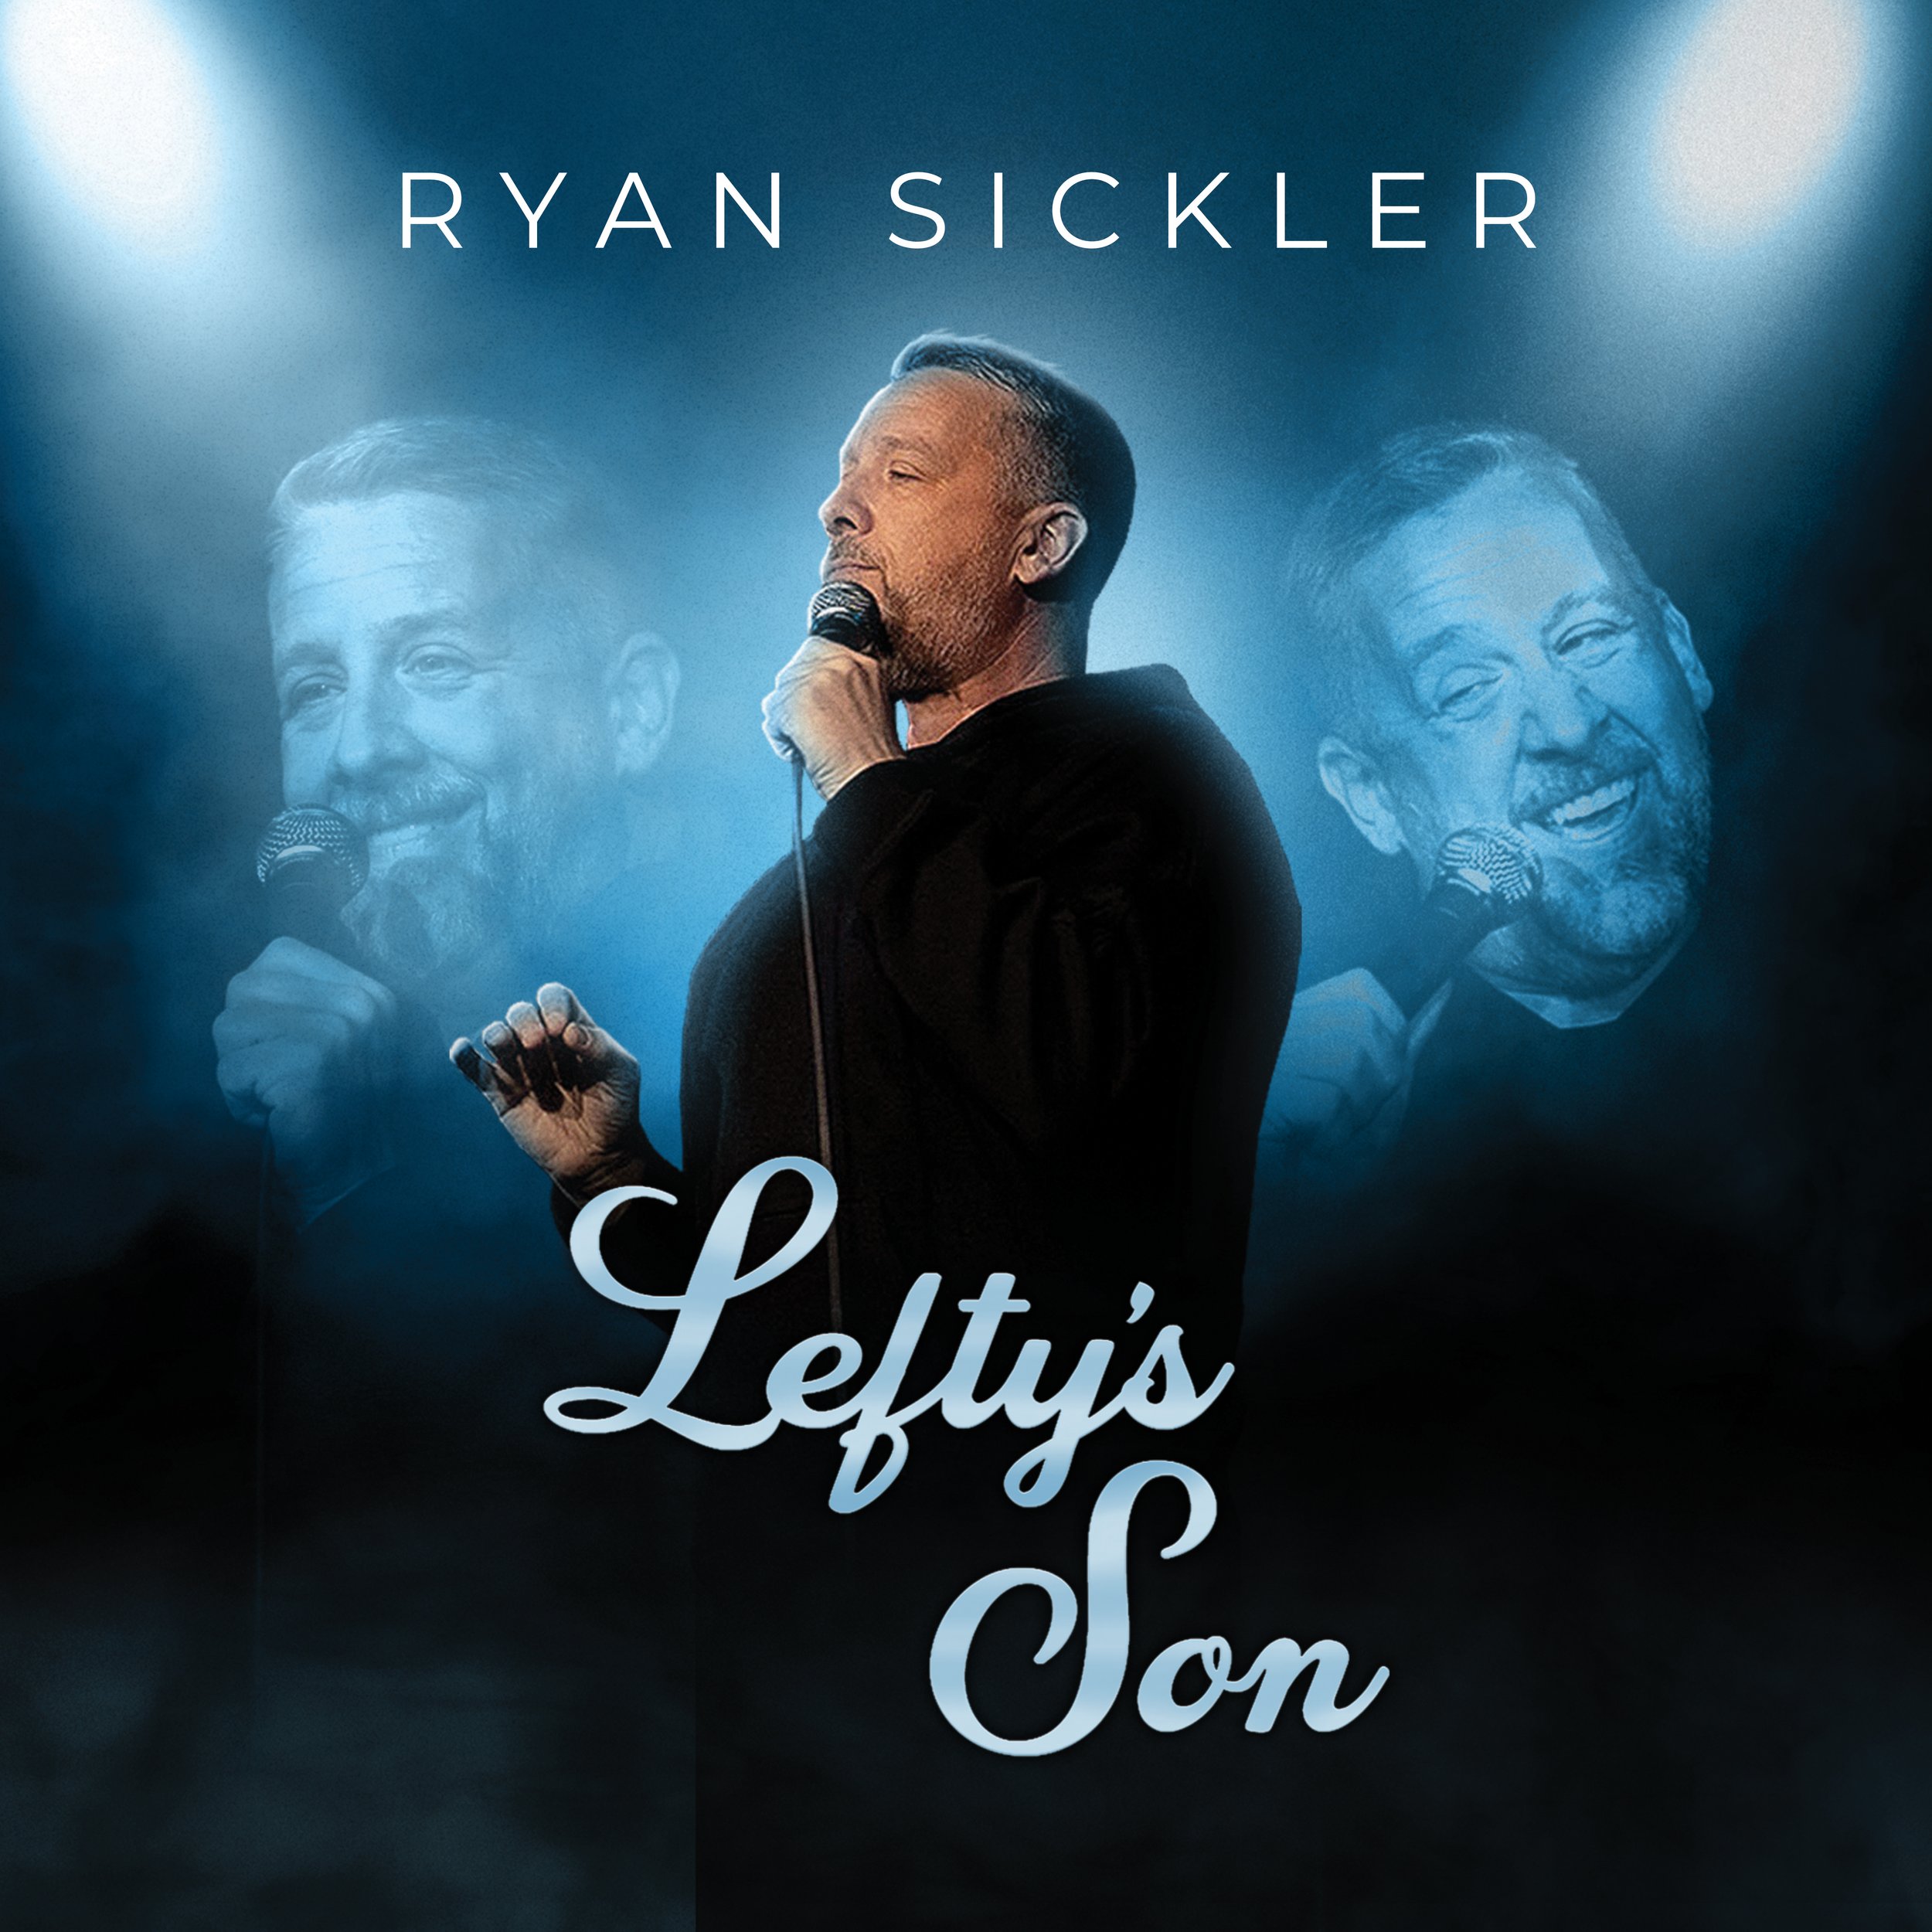 Ryan Sickler - Lefty's Son (Album Art 3000 x 3000) v2.jpg